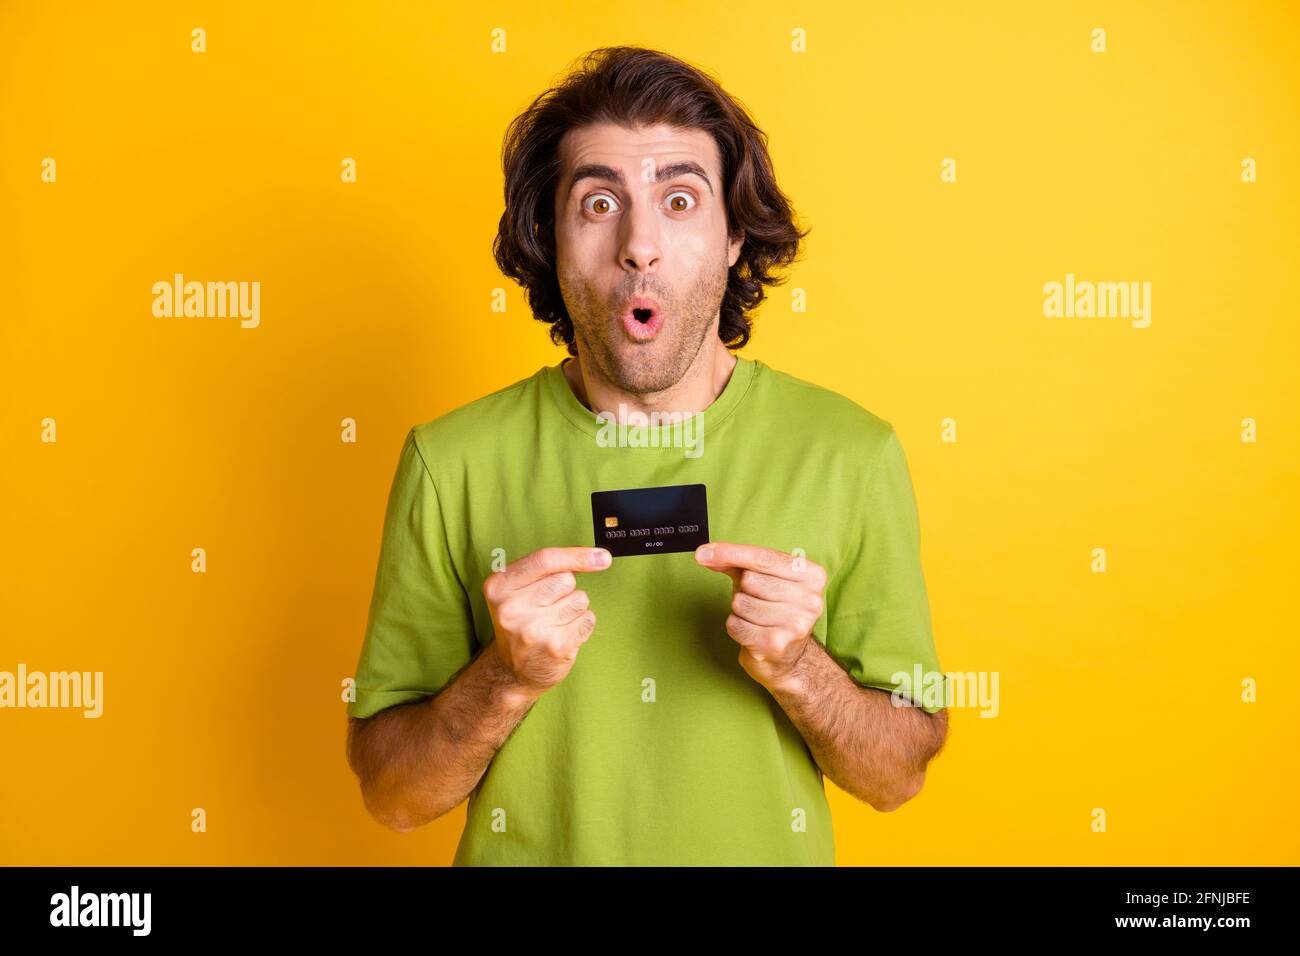 Porträtfoto eines schockierten Mannes, der eine Plastikkarte vorführt und anstarrt Isoliert auf lebhaft gelbem Hintergrund Stockfoto